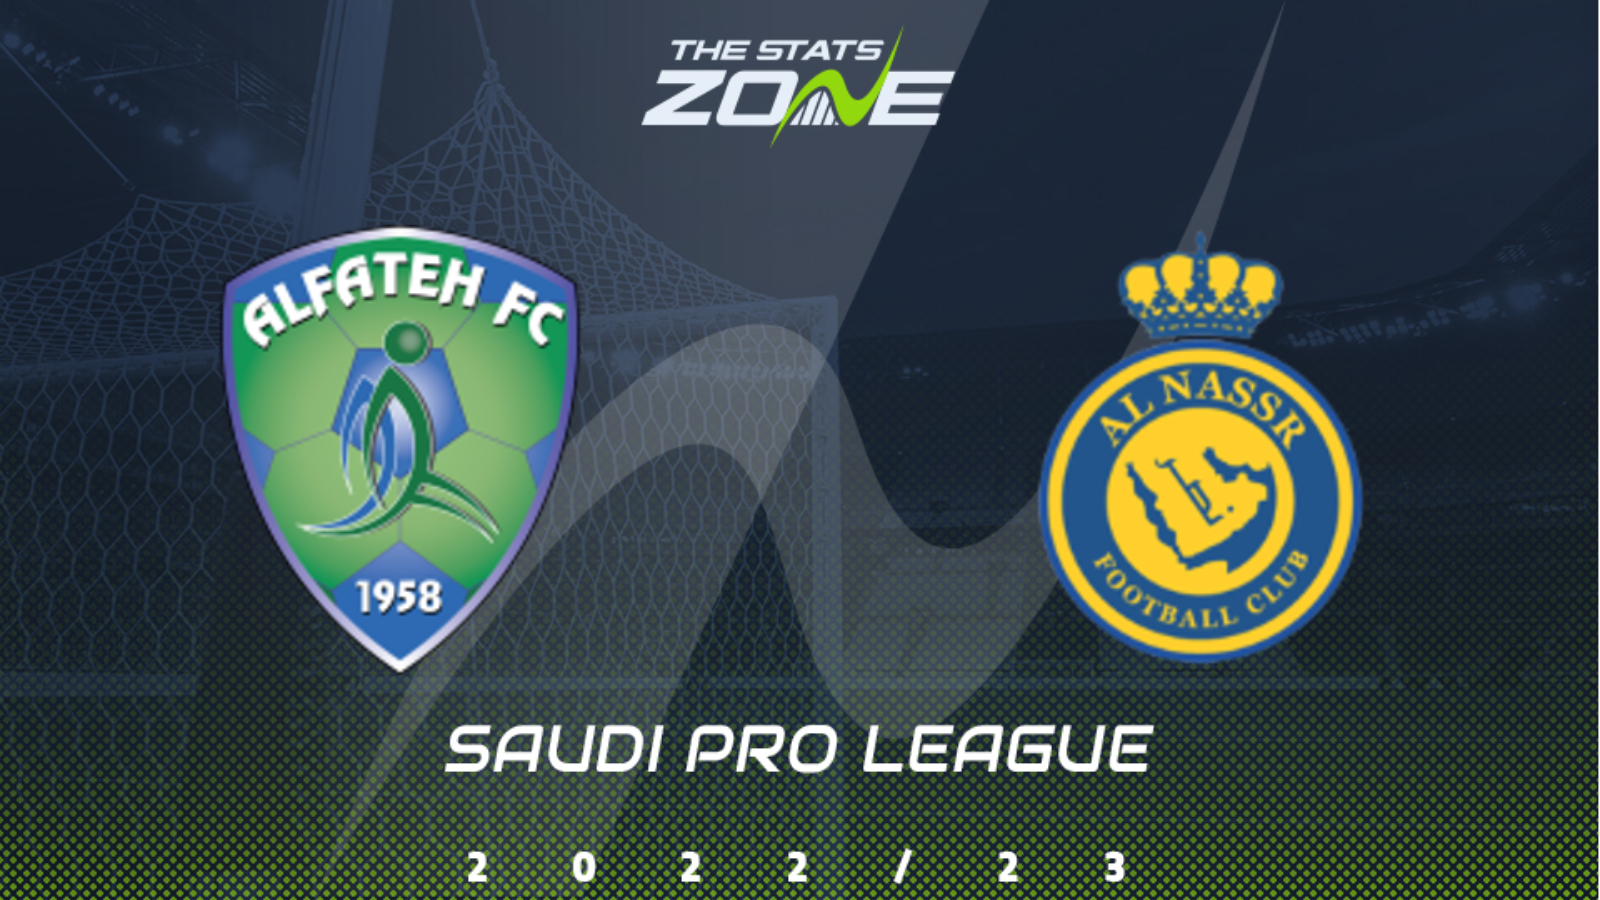 Al Fateh SC logo. Saudi pro league